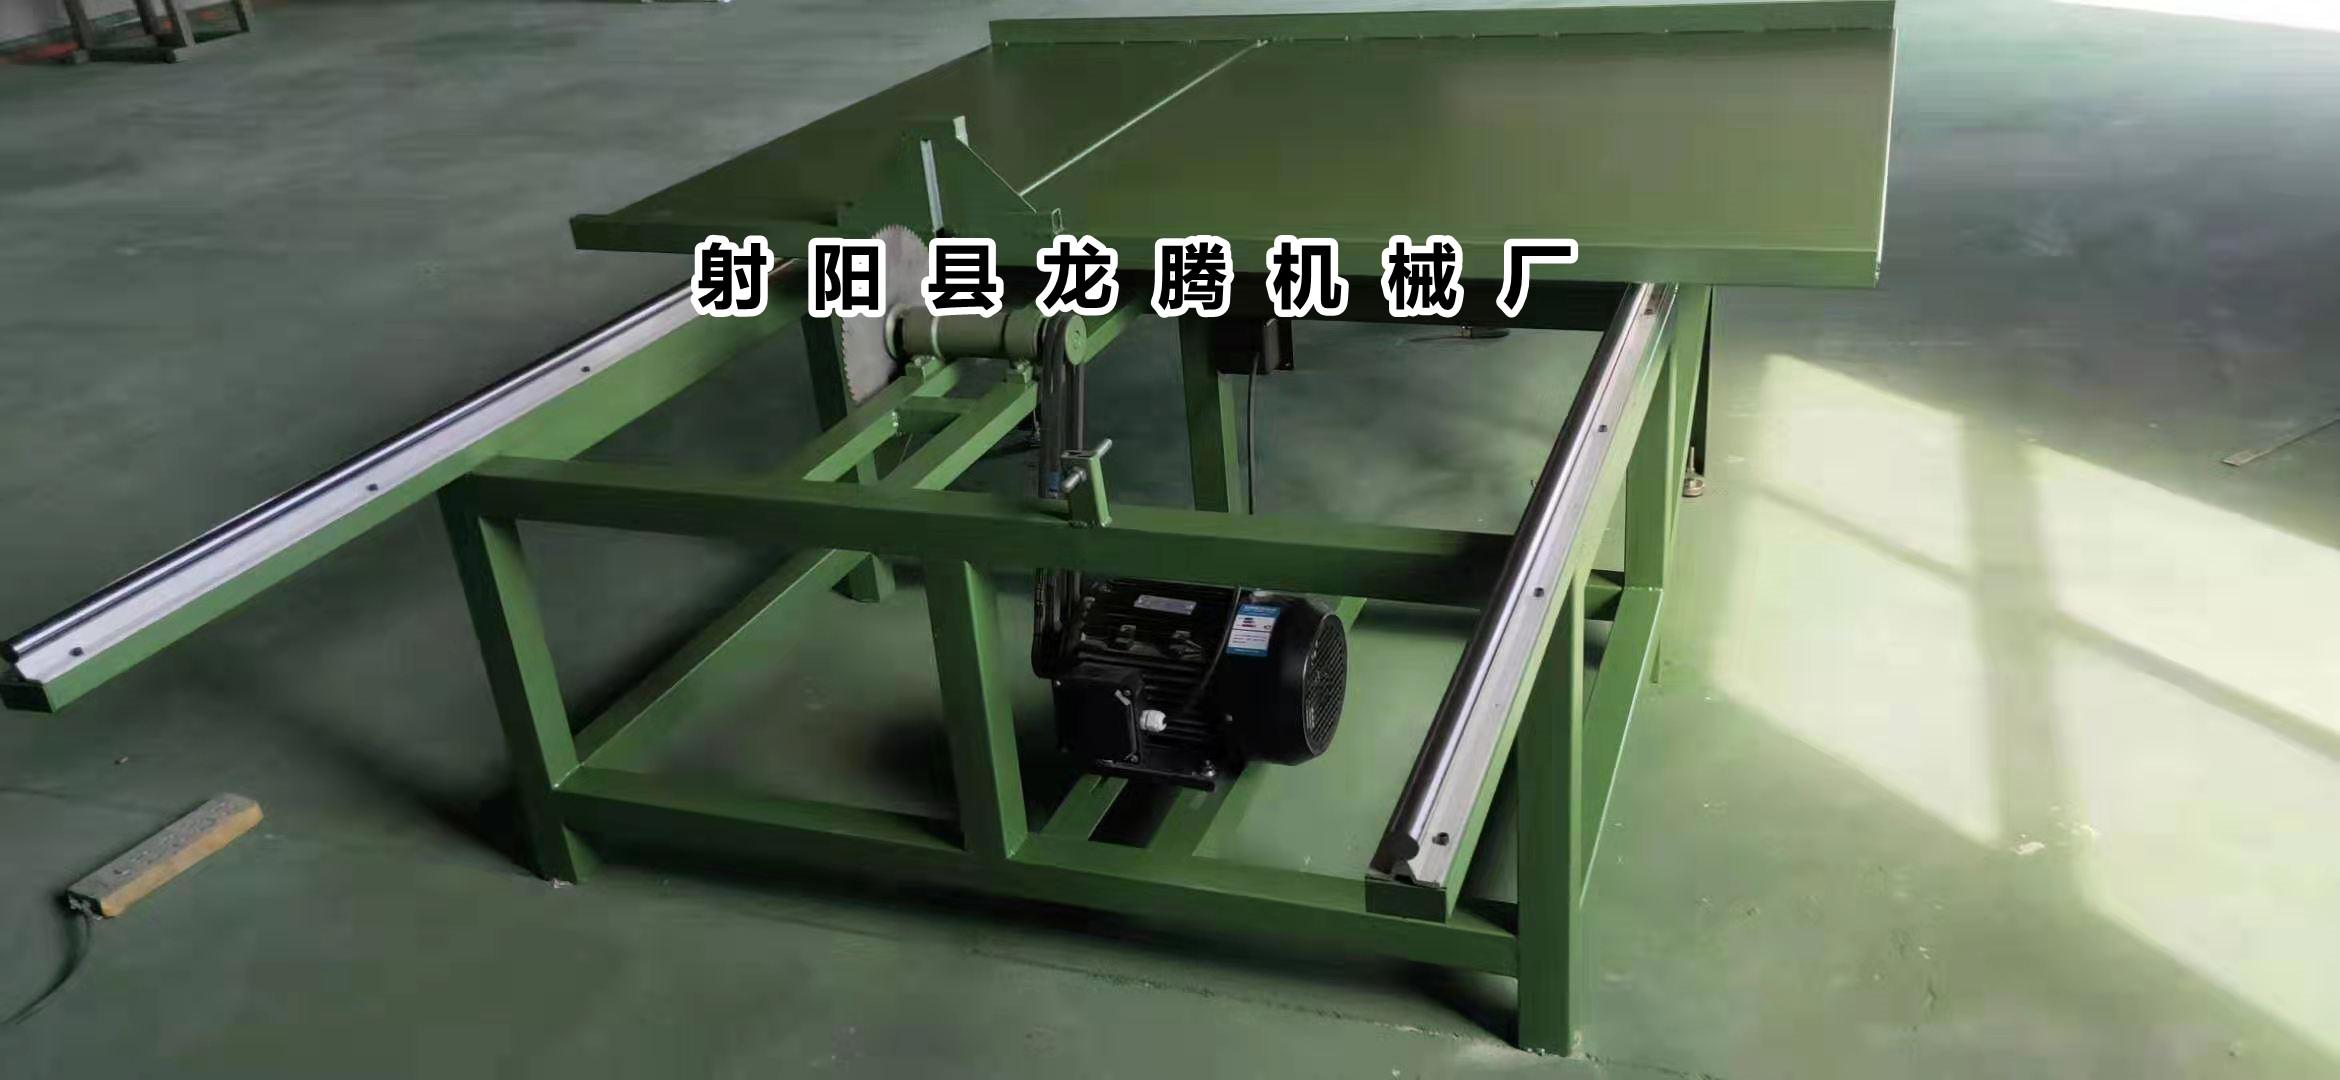 简易式木工机械推台锯厂价直销可非标定制自制台锯滑轨配件